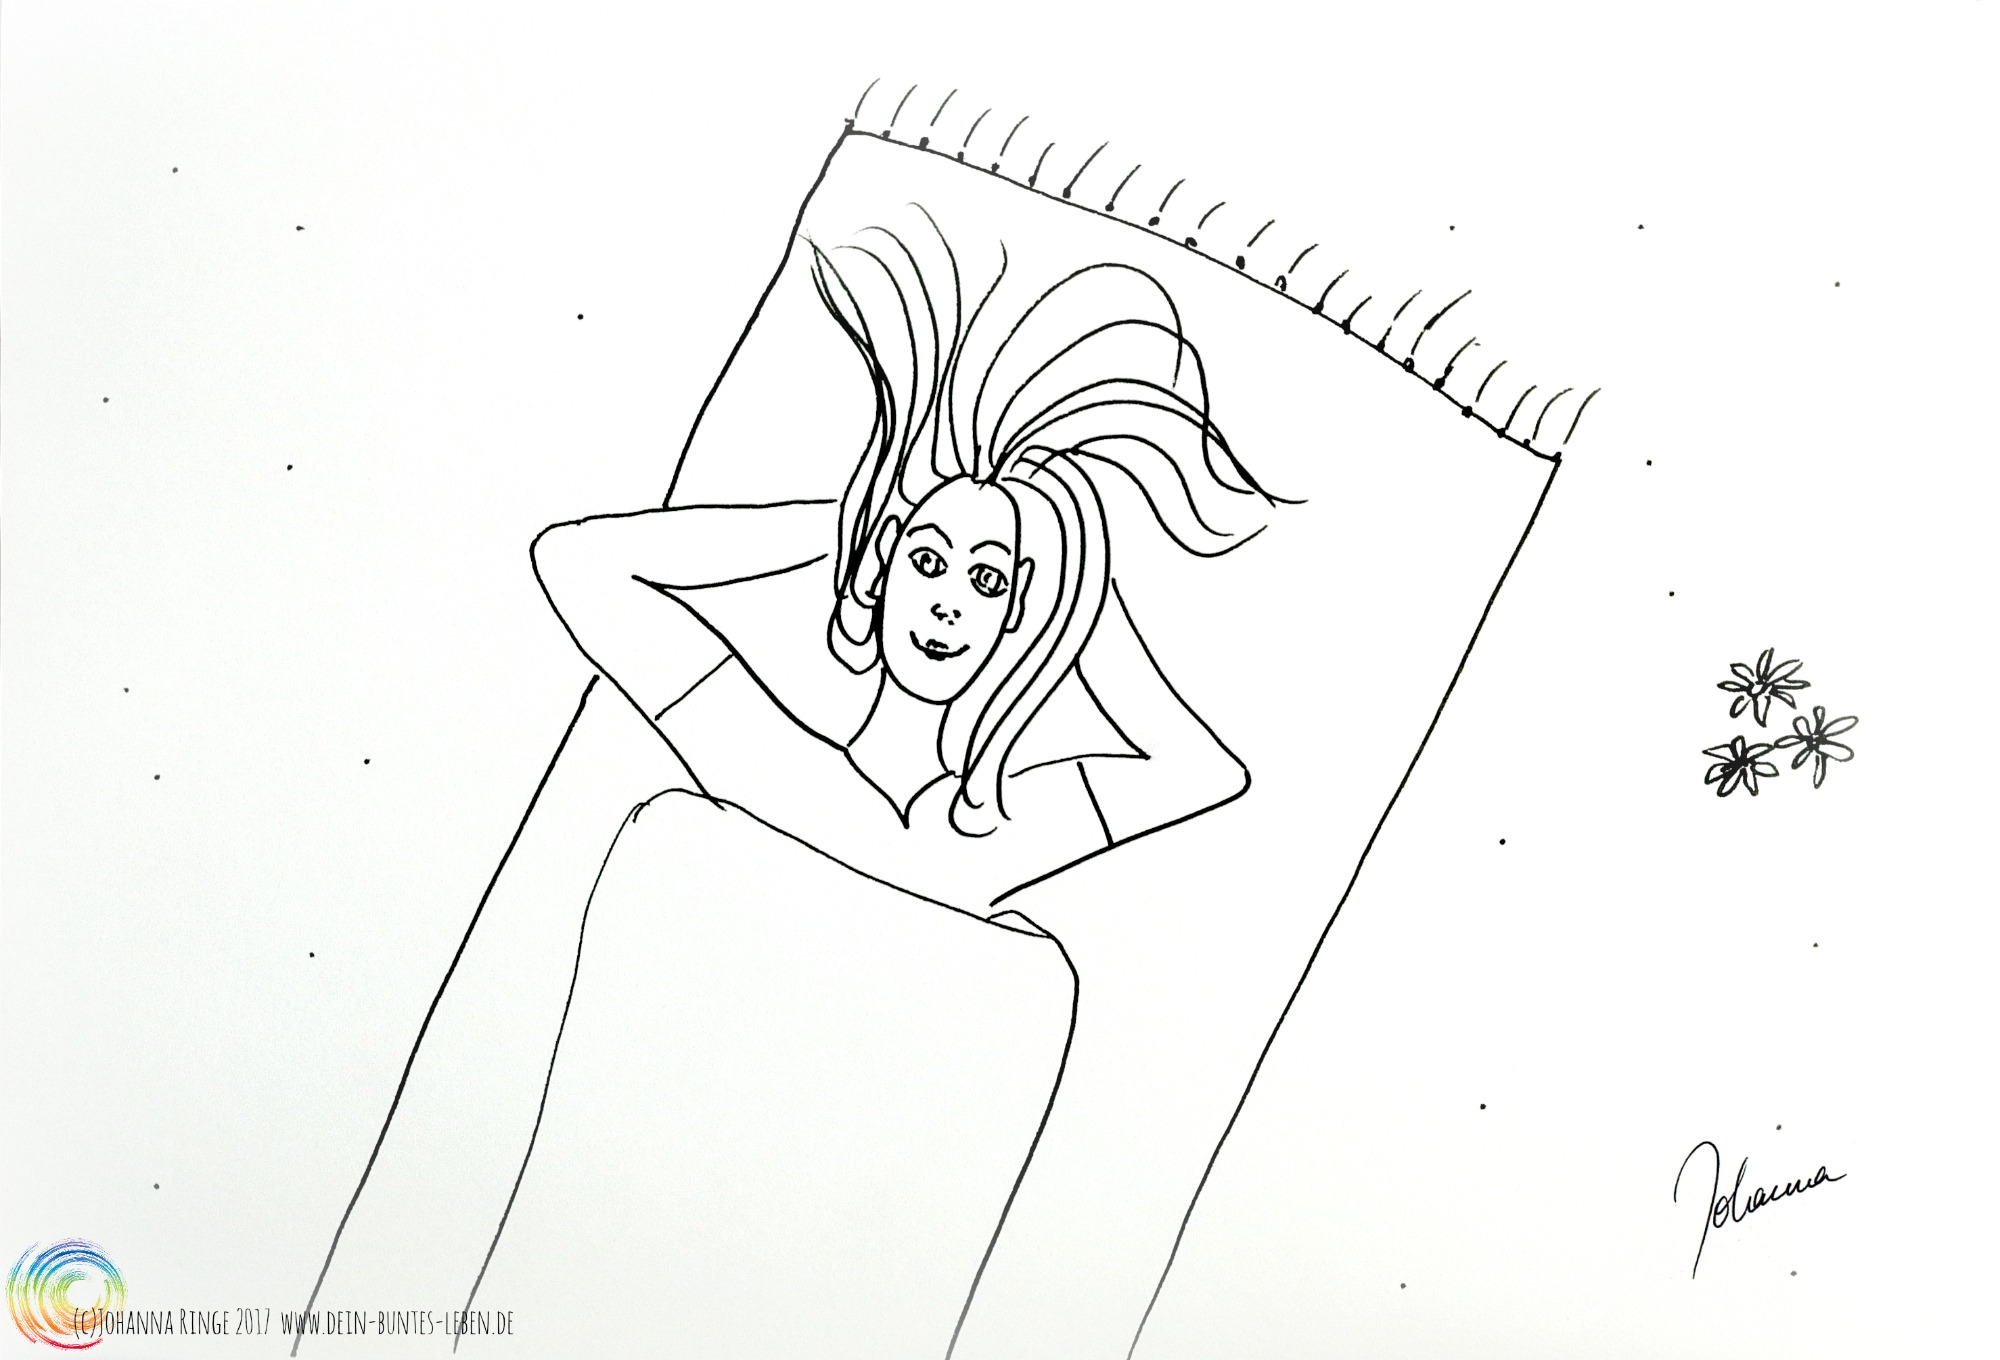 Allein: Zeichnung (Vogelperspektive) einer Frau, die entspannt auf einer Decke liegt. (c)2017 Johanna Ringe www.dein-buntes-leben.de